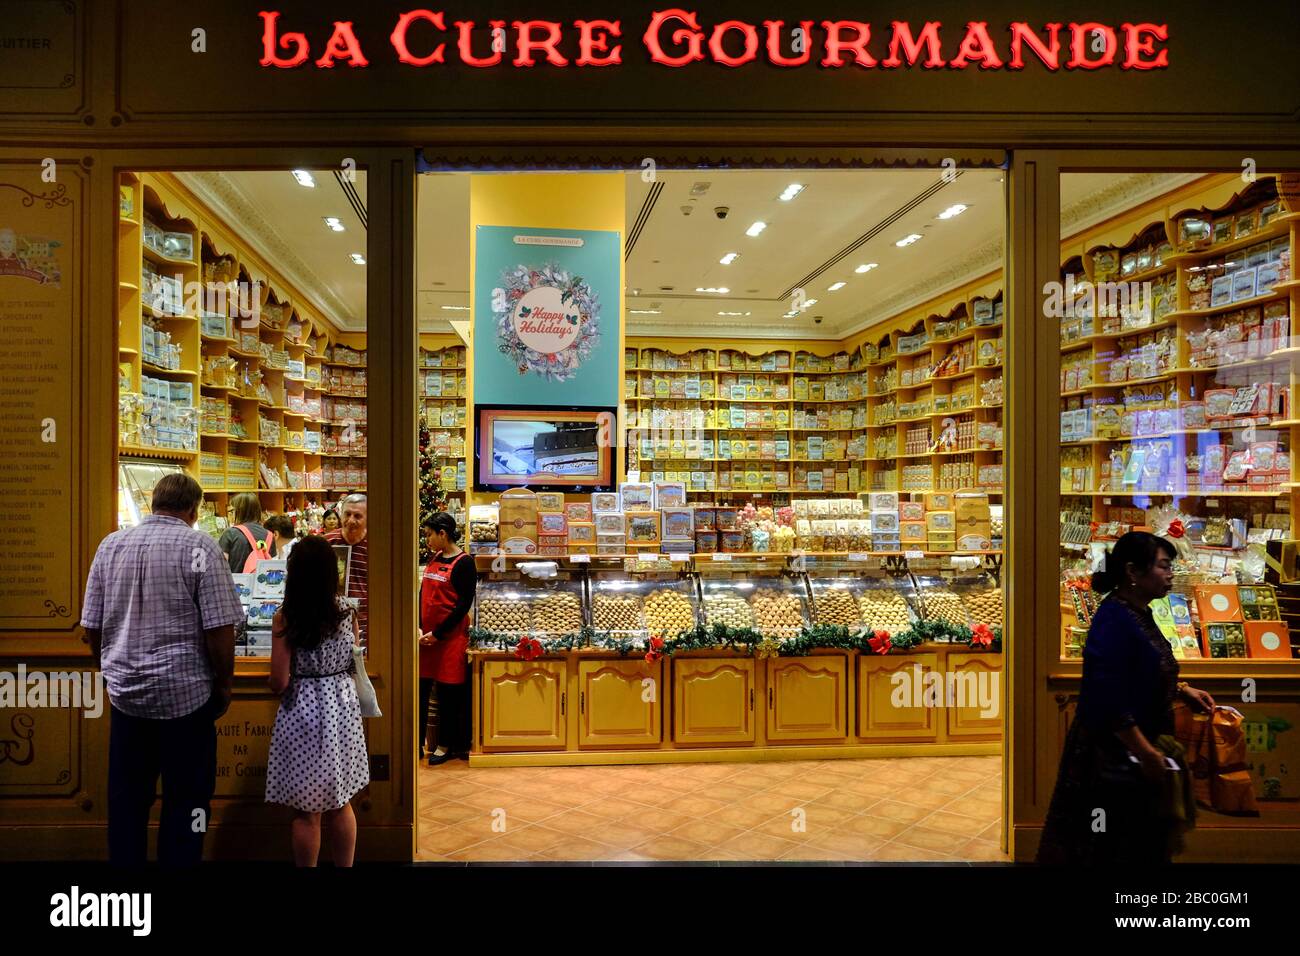 La Cure Gourmande Gourmet-Schaufenster in der gigantischen Dubai Mall im Stadtzentrum von Dubai, Vereinigte Arabische Emirate. Stockfoto